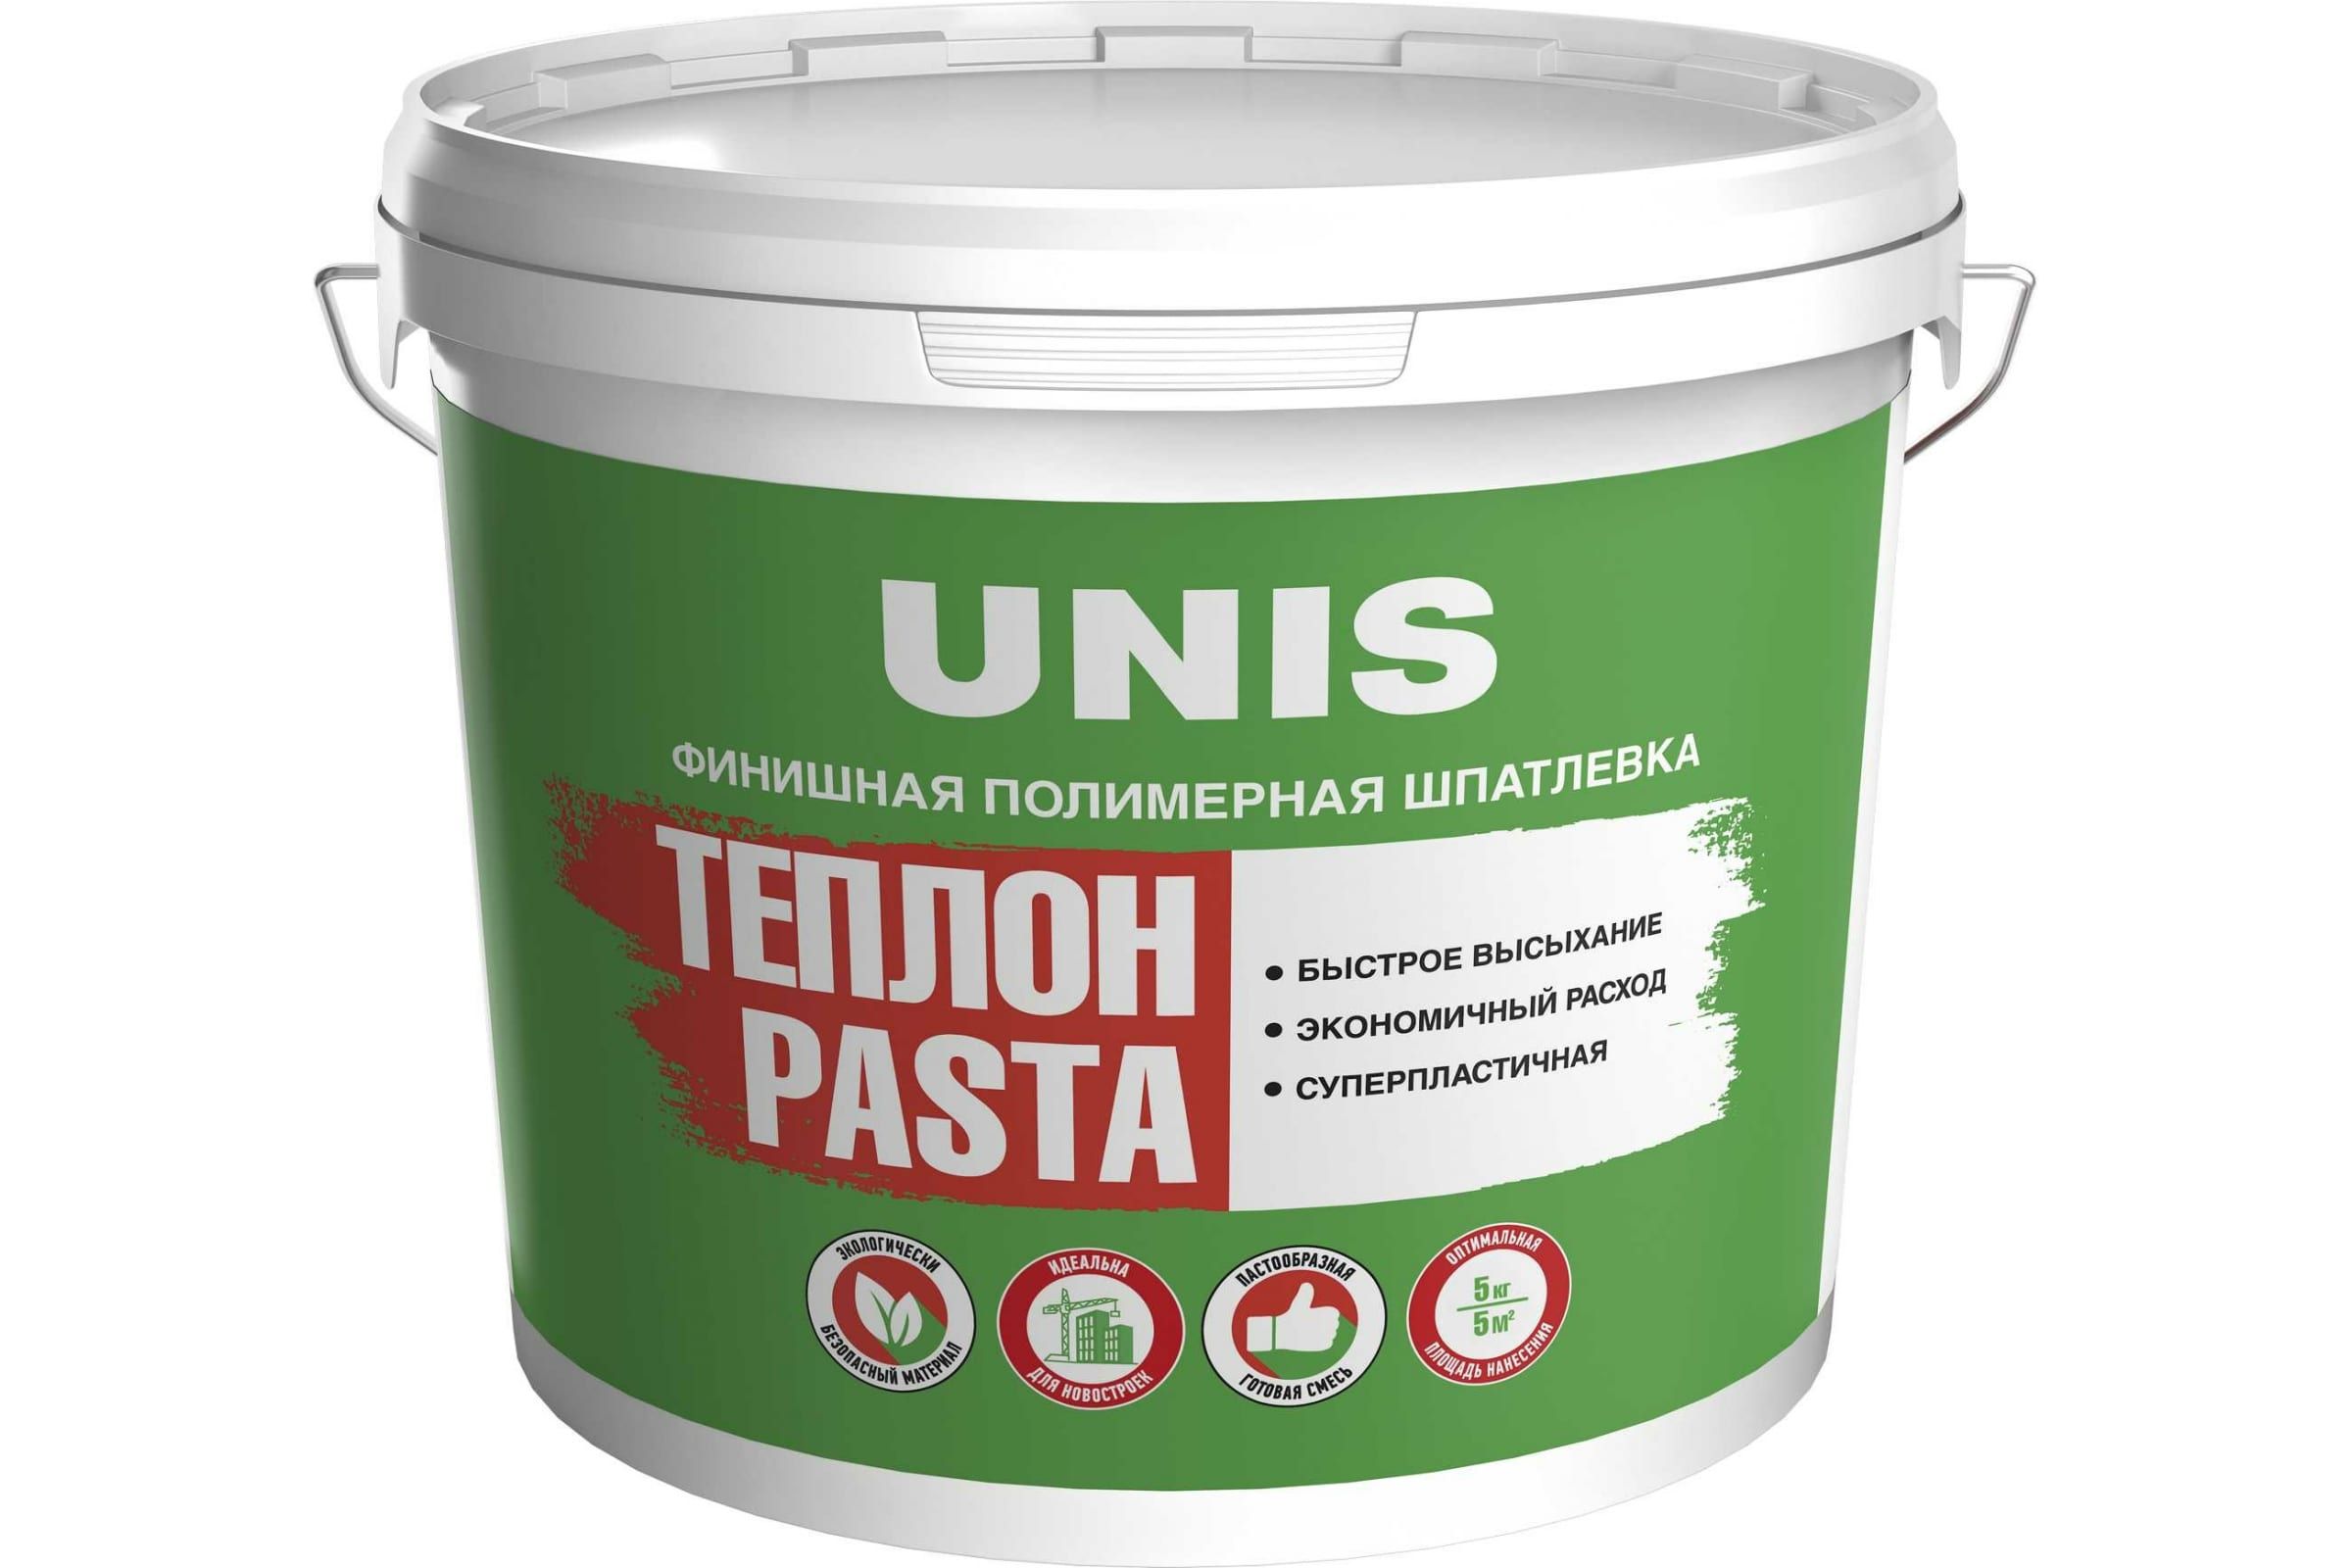 Шпатлевка UNIS Теплон Pasta полимерная, финишная, 5 кг 4607005184887 шпатлевка полимерная финишная unis теплон pasta 5 кг